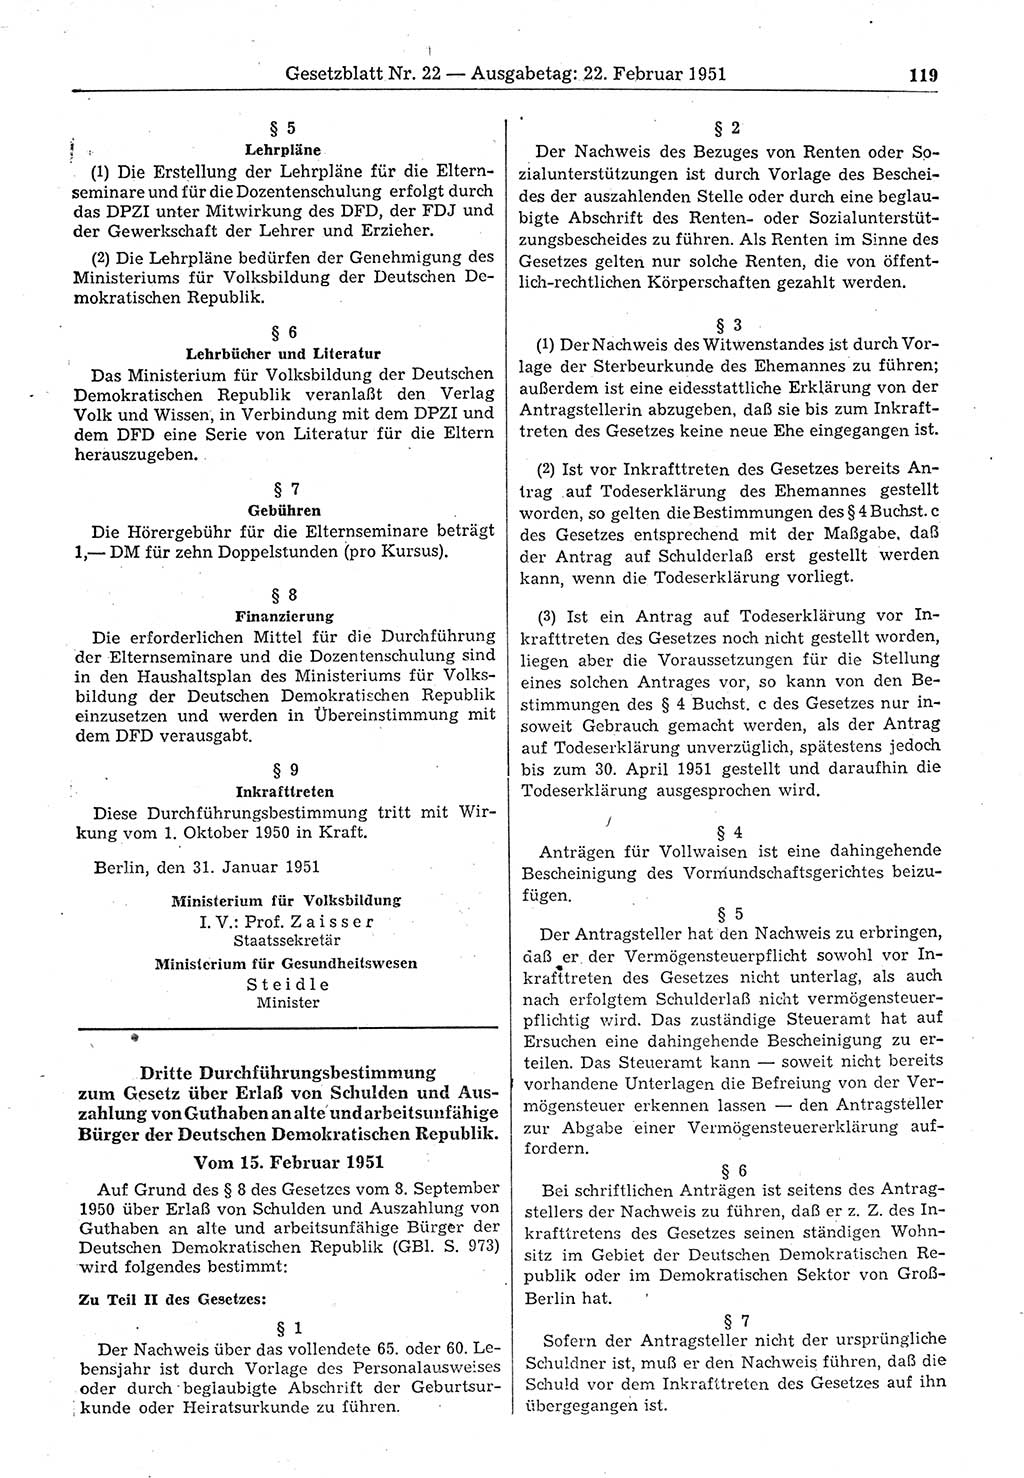 Gesetzblatt (GBl.) der Deutschen Demokratischen Republik (DDR) 1951, Seite 119 (GBl. DDR 1951, S. 119)